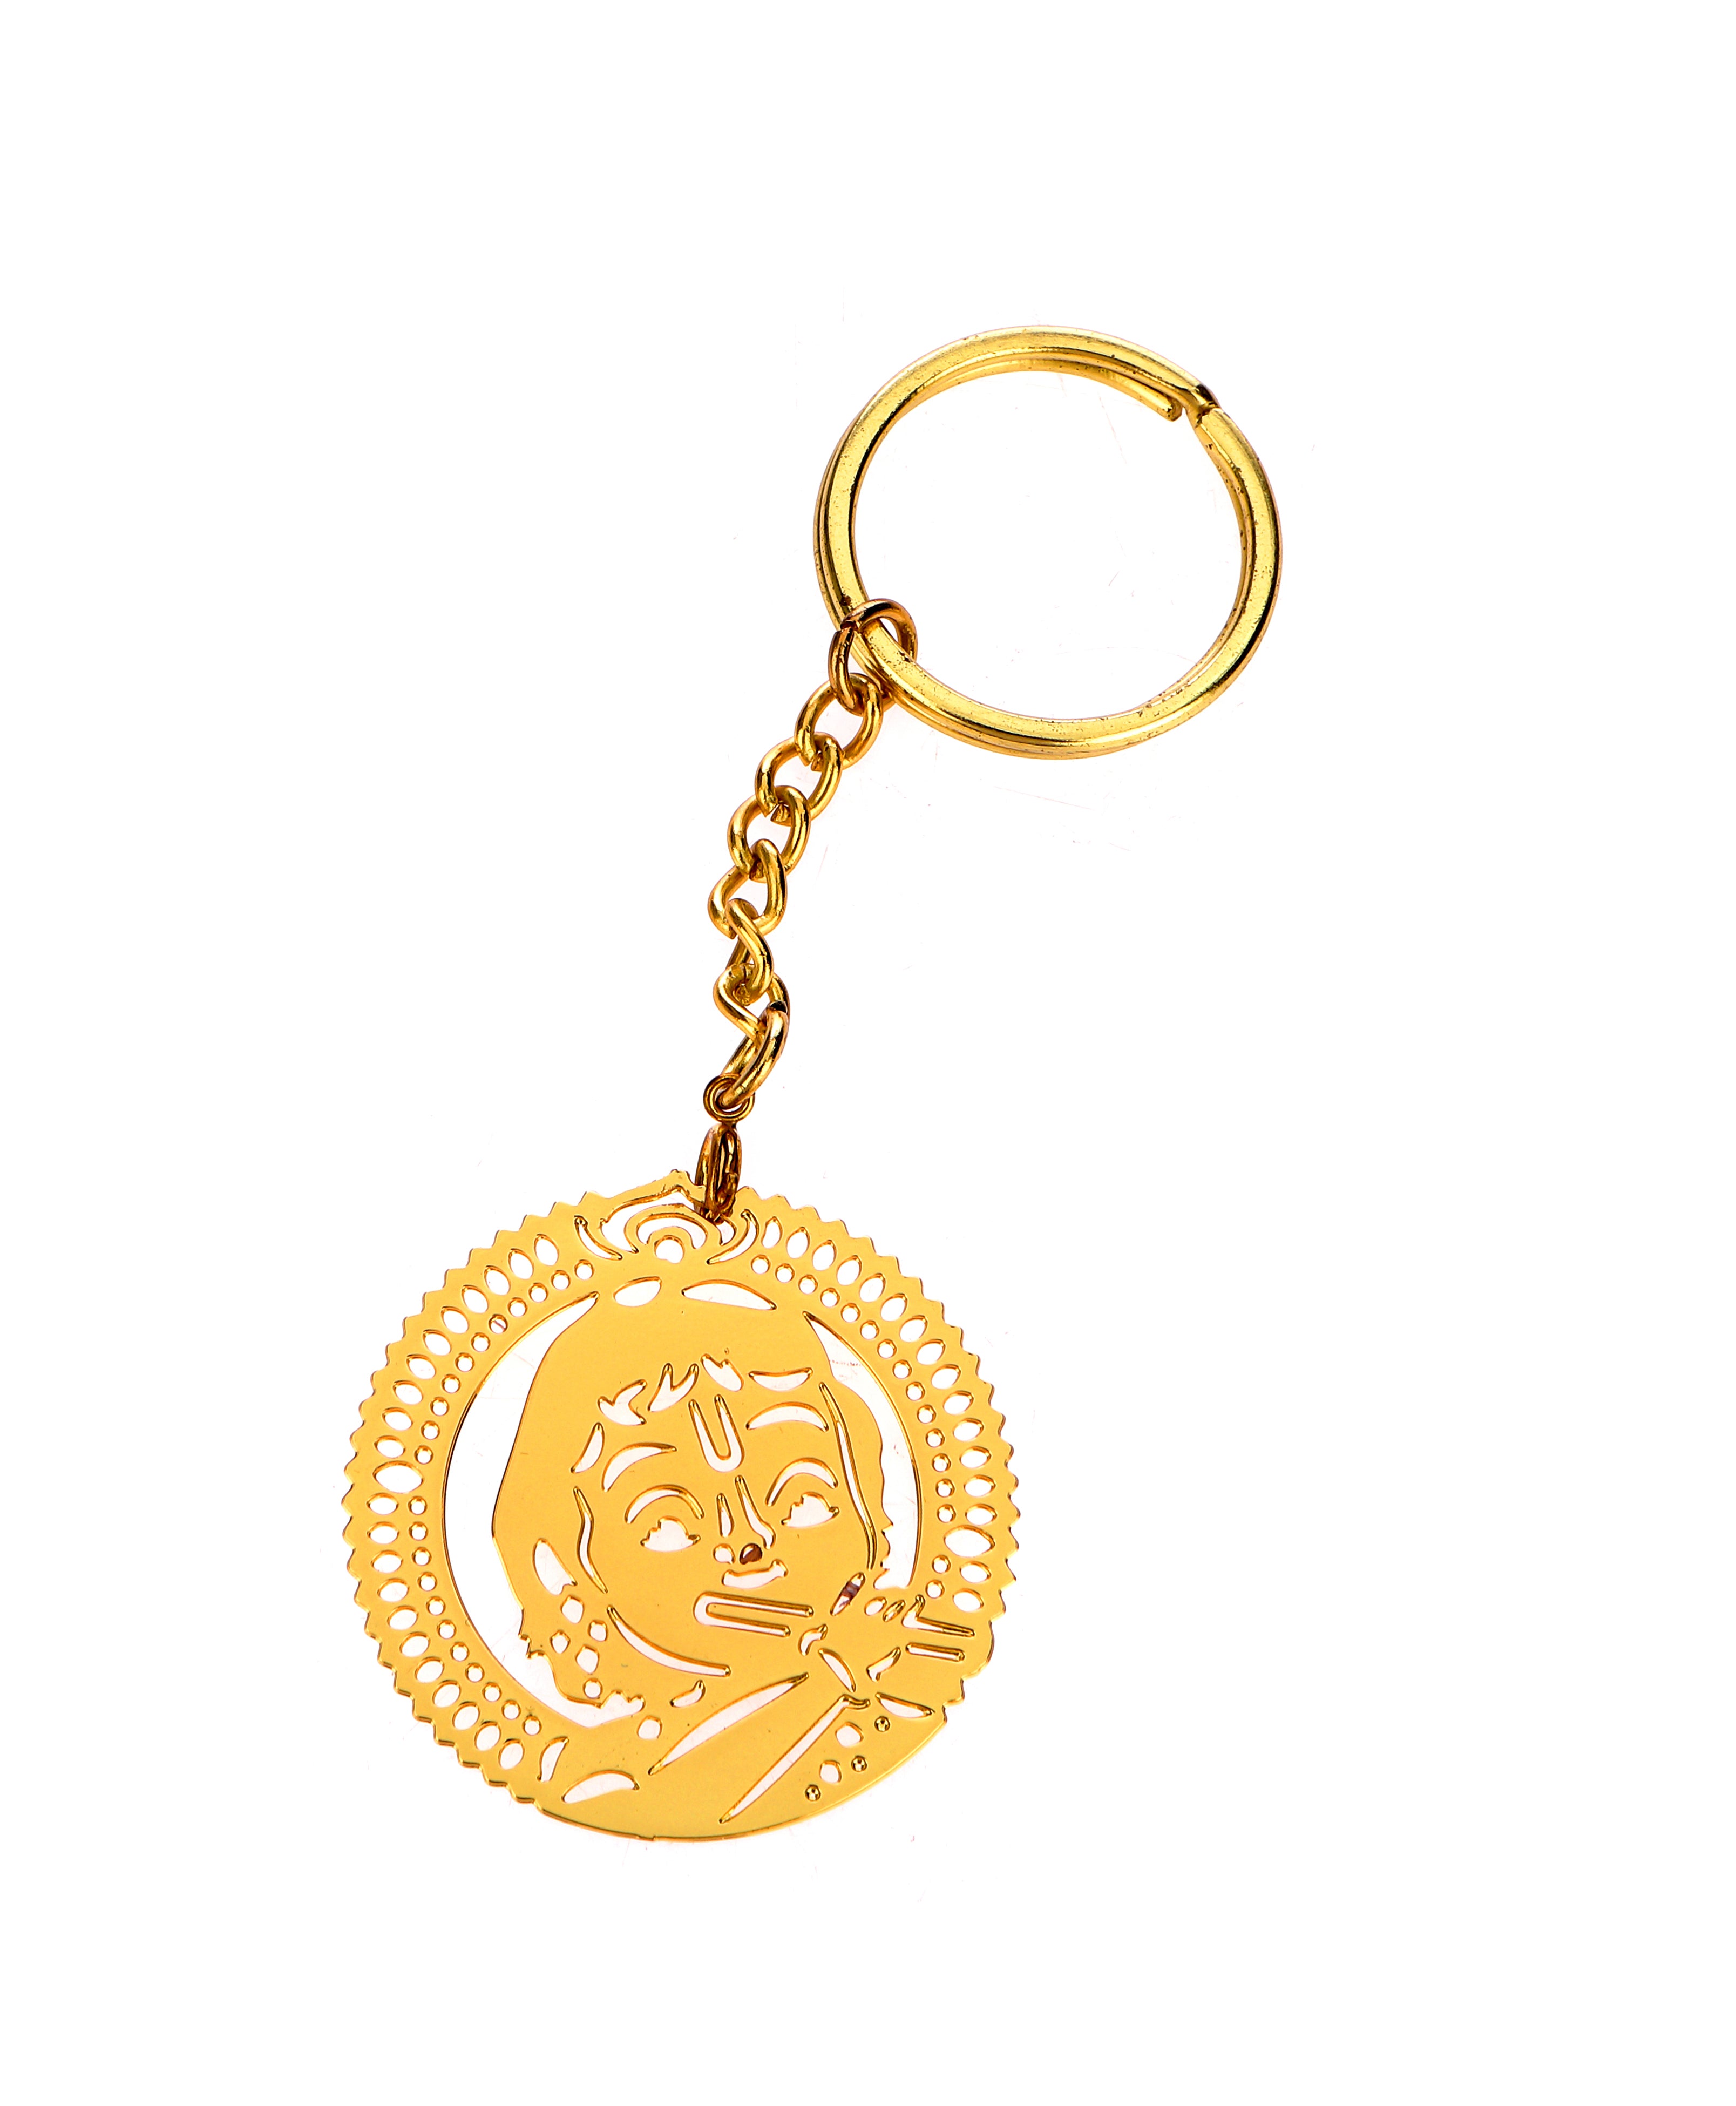 Bal Krishna Brass Key Chain Ring in Golden Finish